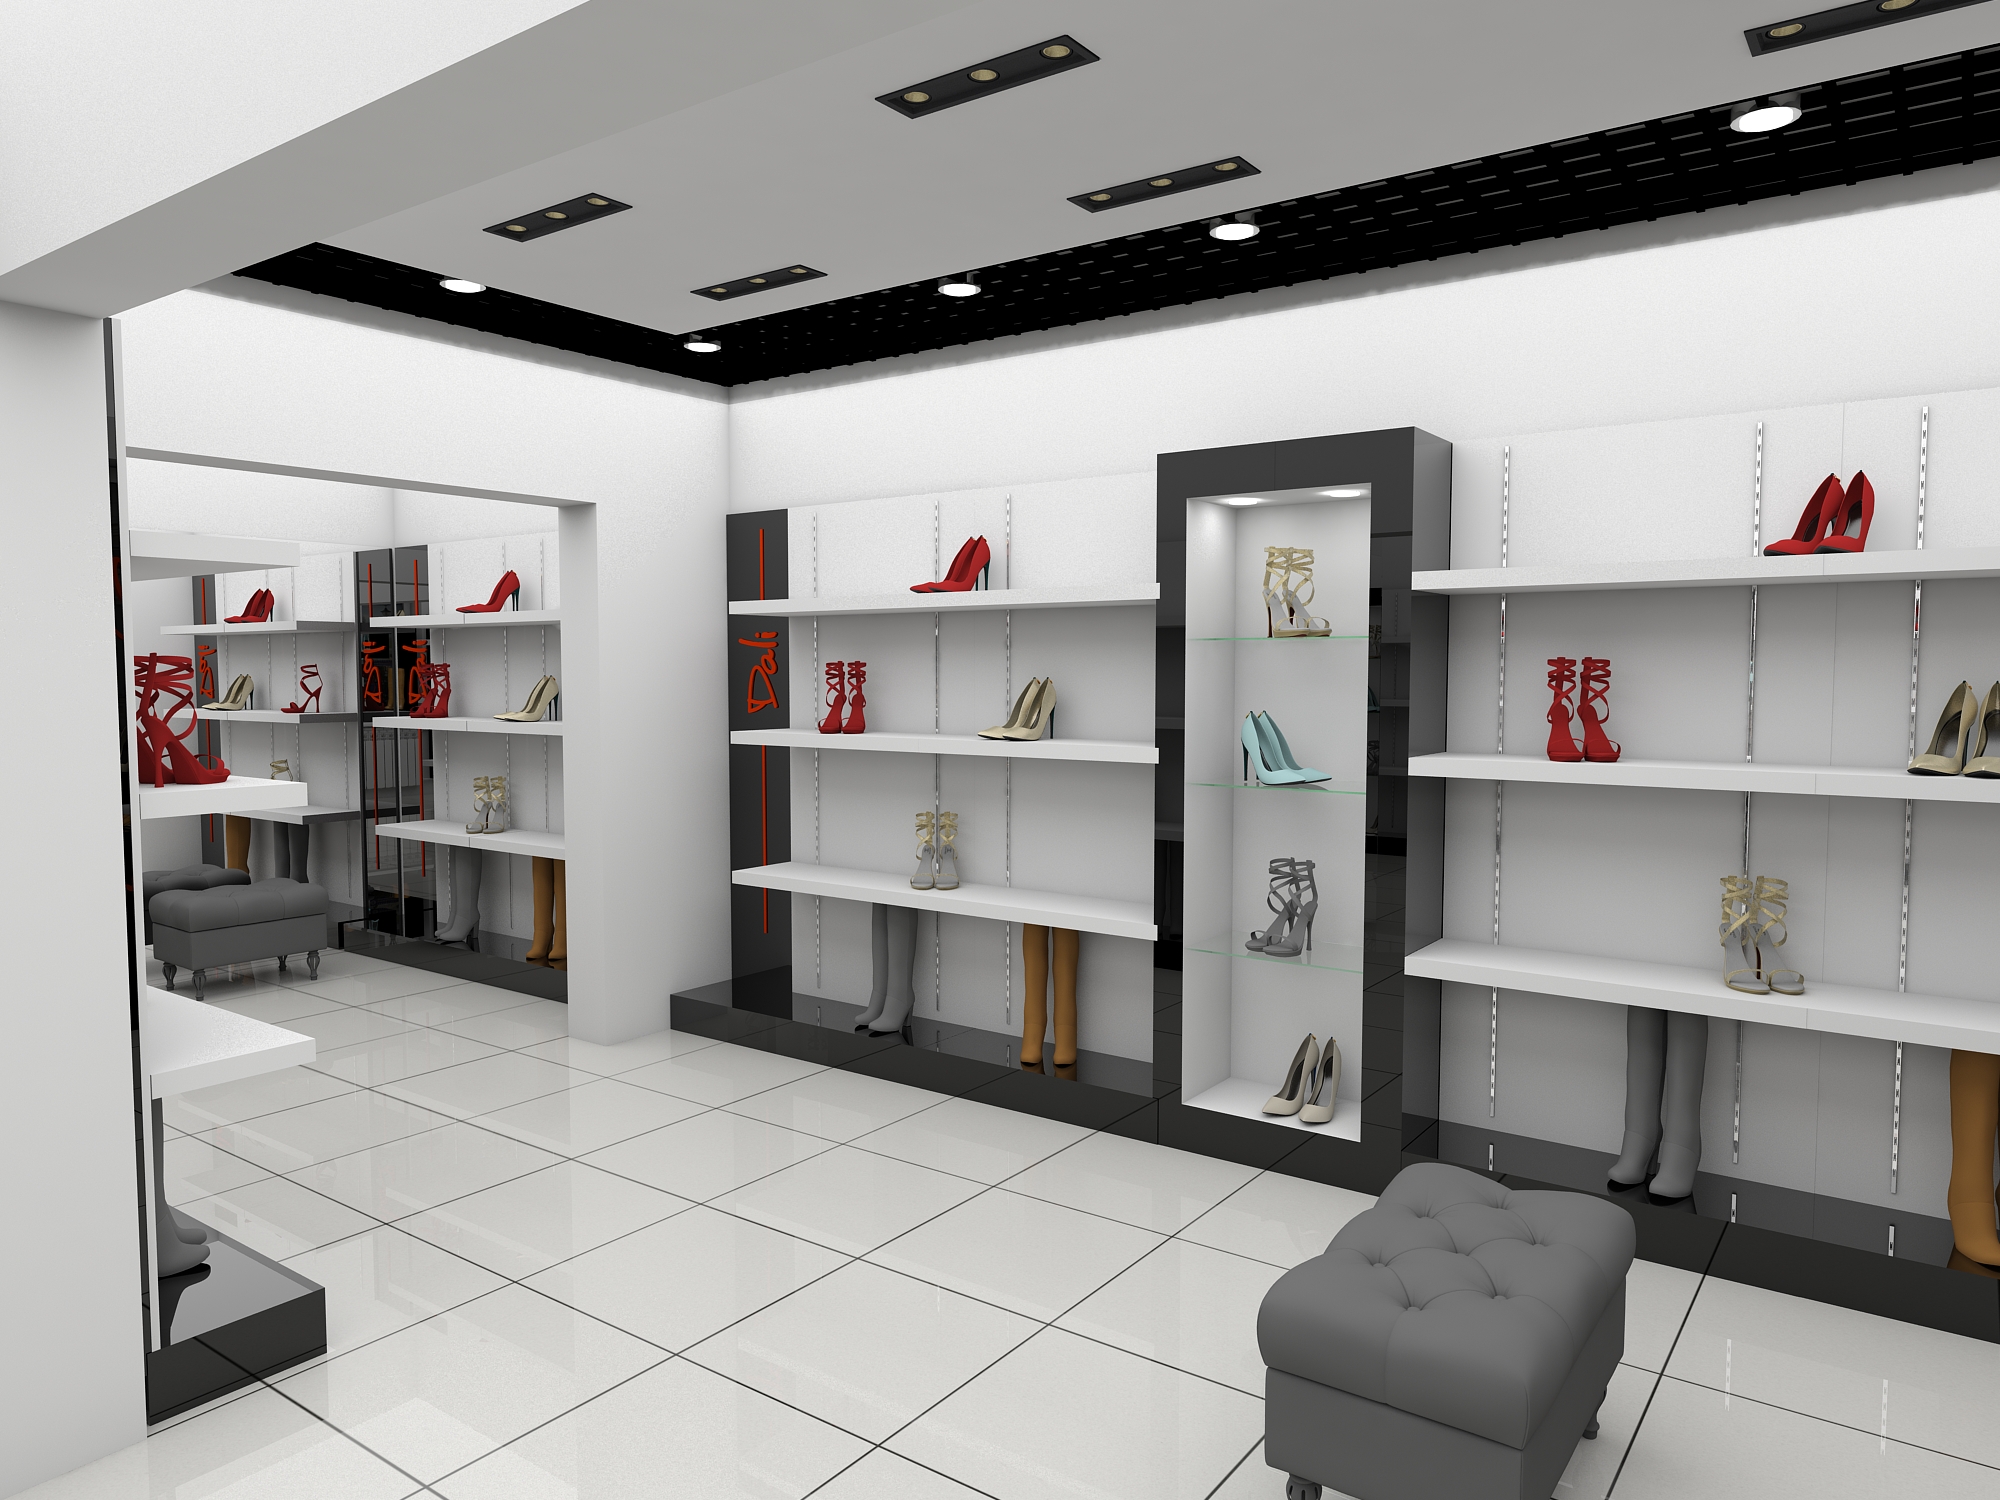 Дизайн проект магазина globomarket ru. Дизайнерский проект магазина. Интерьер обувного магазина. Интерьер обувного бутика. Проект магазина обуви.